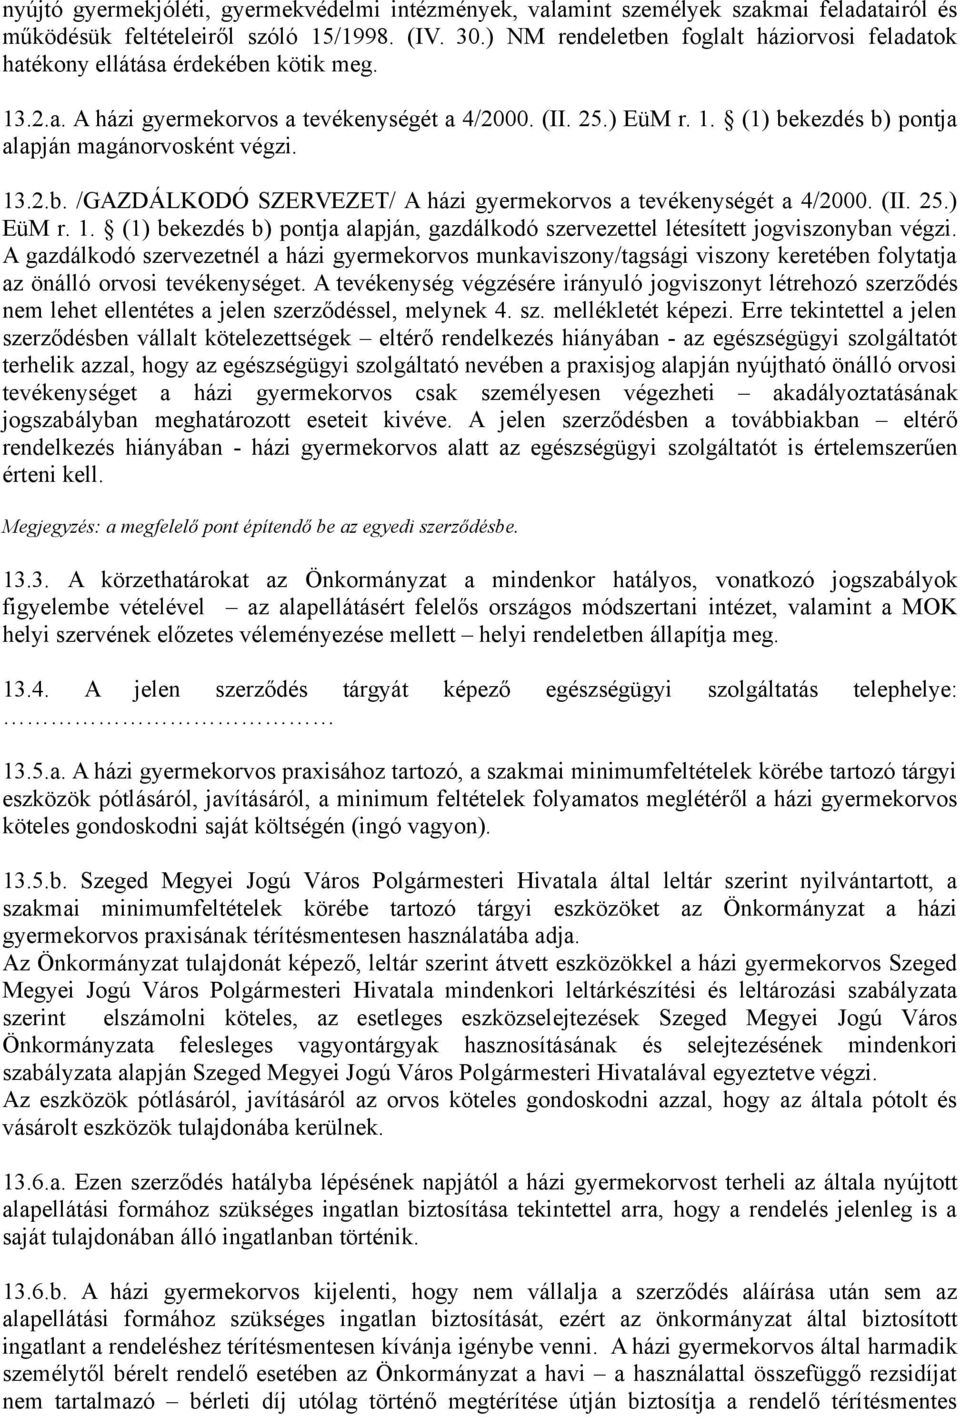 13.2.b. /GAZDÁLKODÓ SZERVEZET/ A házi gyermekorvos a tevékenységét a 4/2000. (II. 25.) EüM r. 1. (1) bekezdés b) pontja alapján, gazdálkodó szervezettel létesített jogviszonyban végzi.